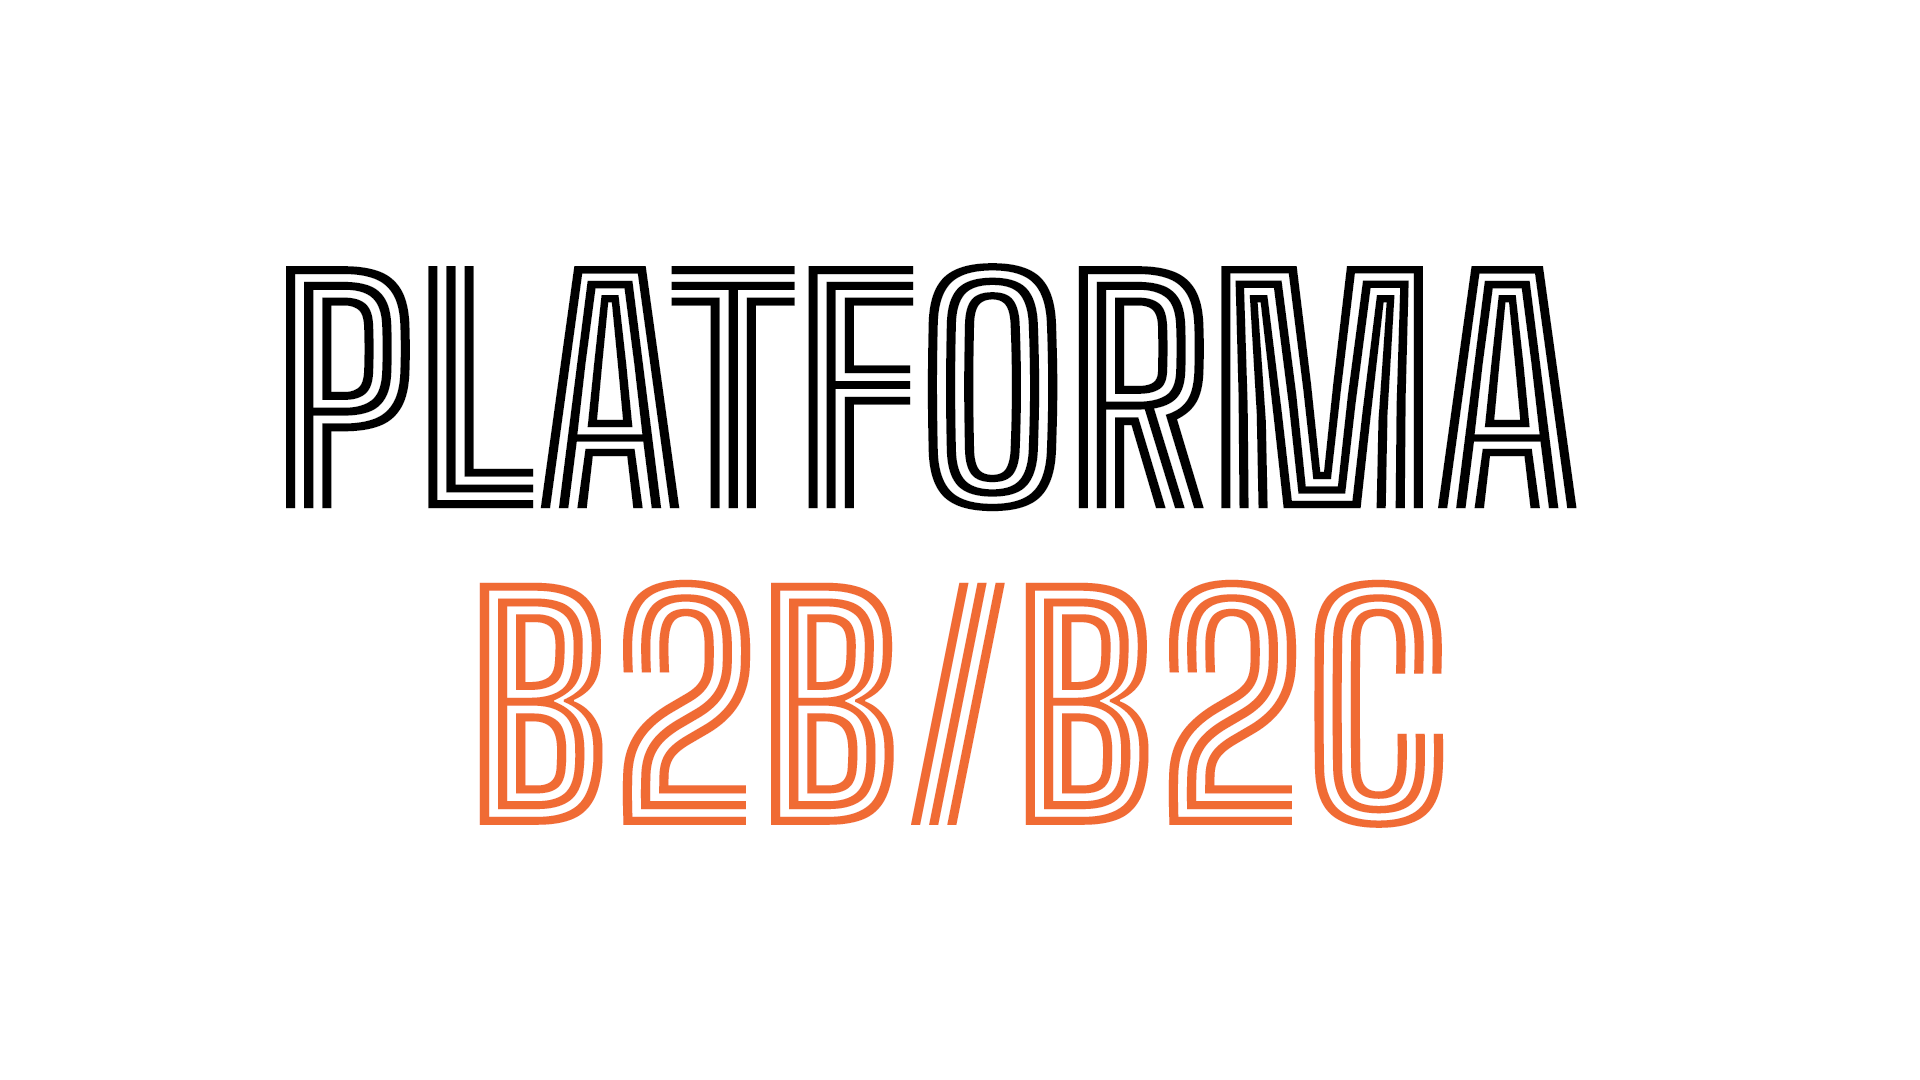 Sprawna i szybka platforma B2B/B2C dla międzynarodowej marki